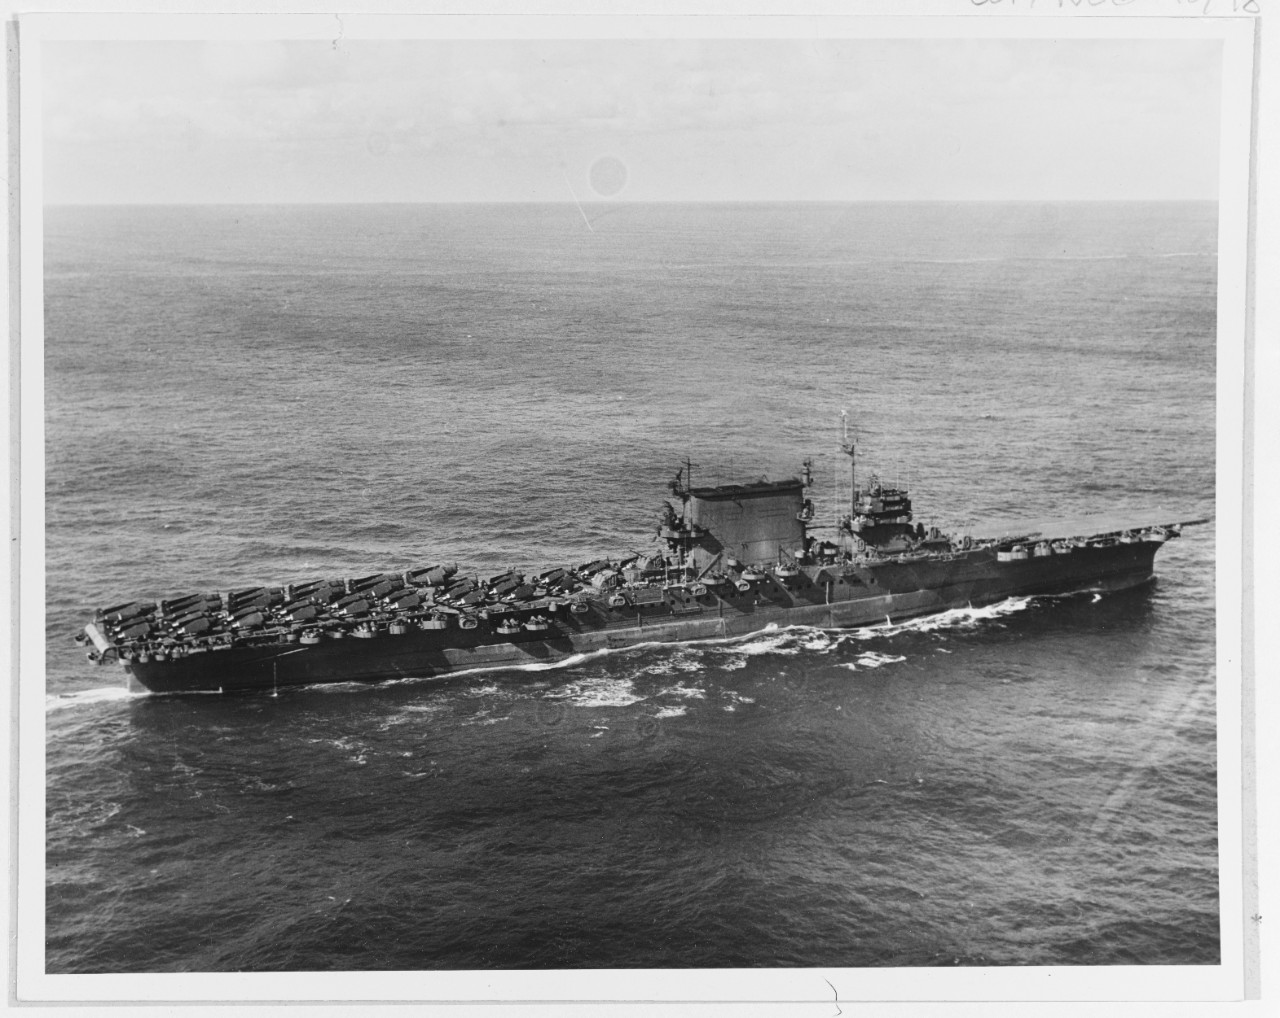 USS SARATOGA (CV-2